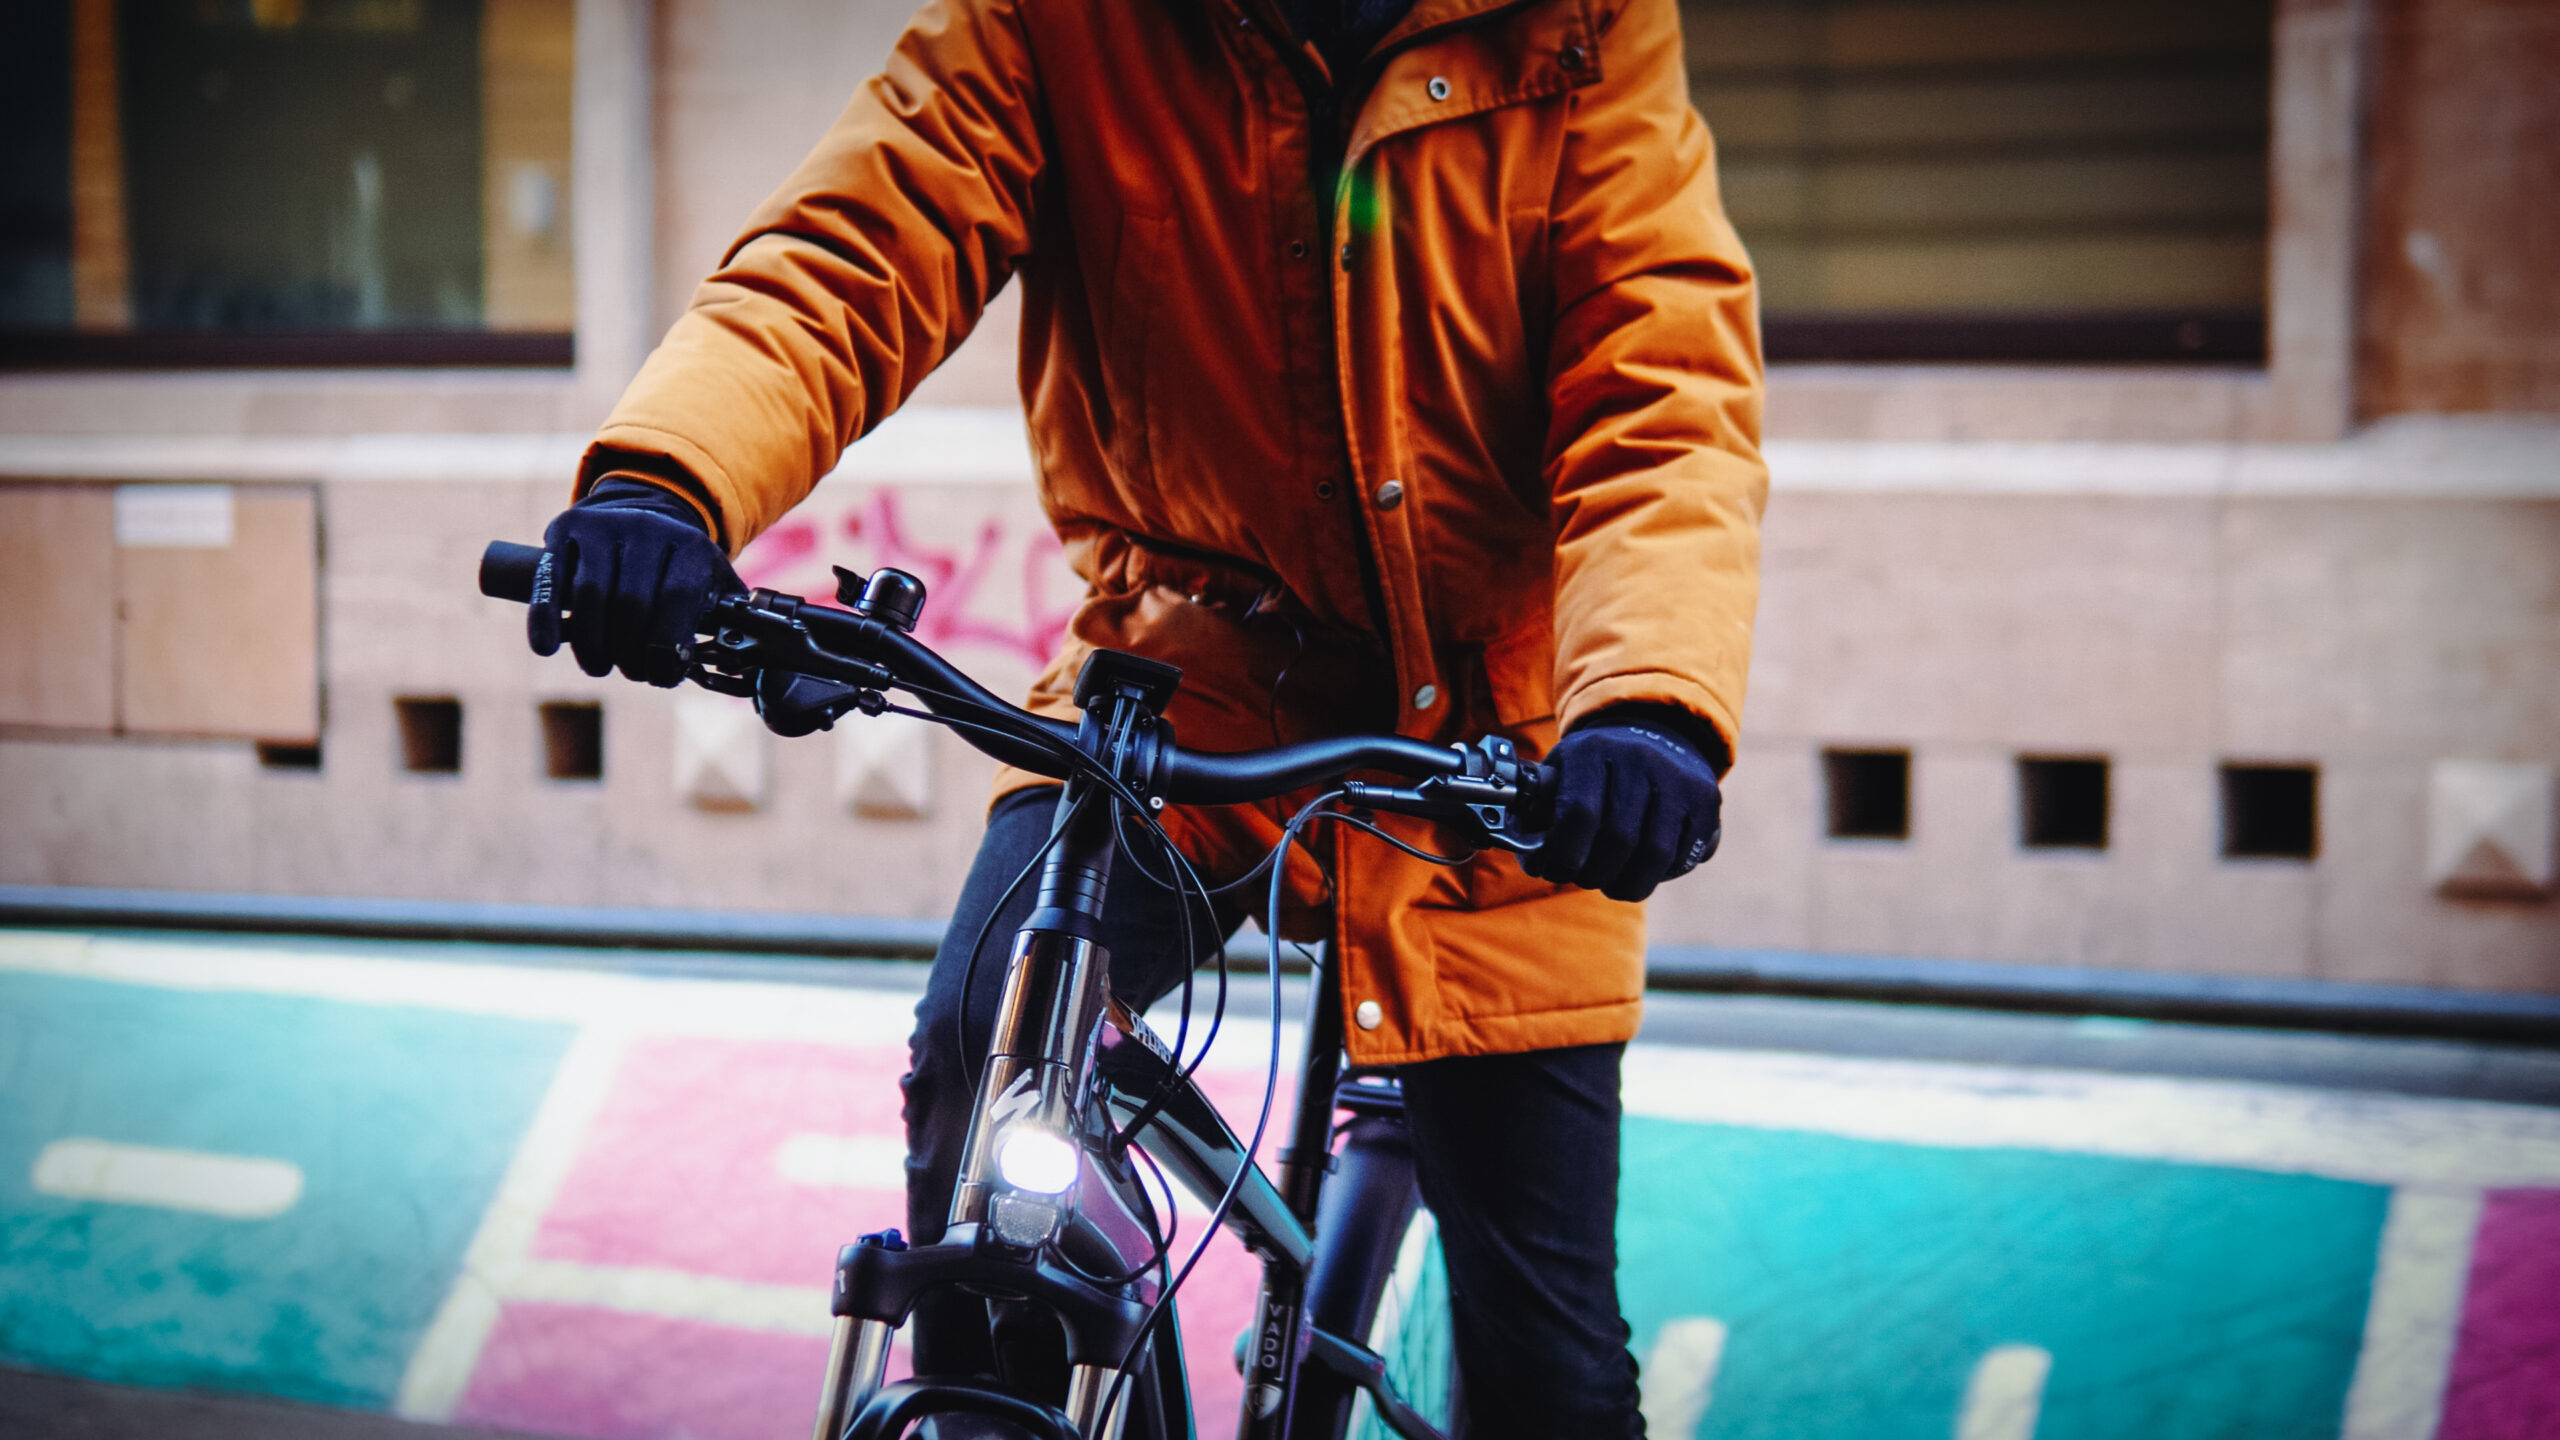 Veste vélo hiver : le top de la protection thermique pour la route